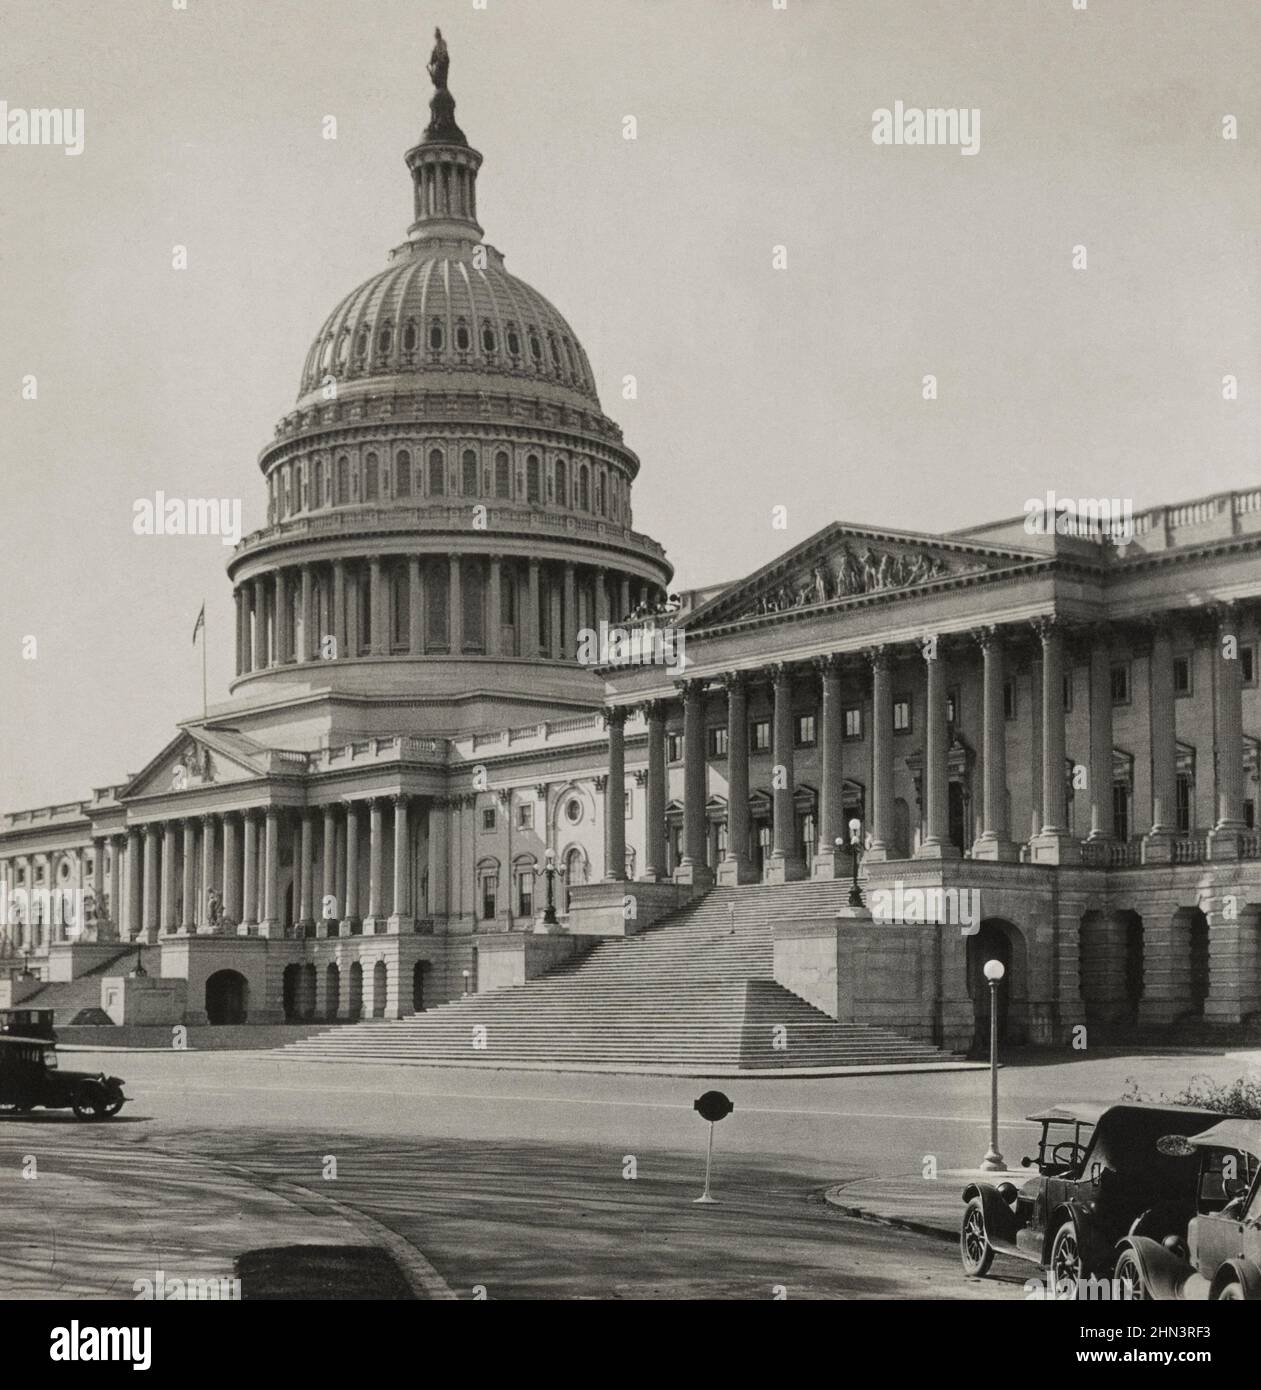 Photo d'époque du Capitole des États-Unis (face est), Washington, D.C., États-Unis. 1926 Banque D'Images